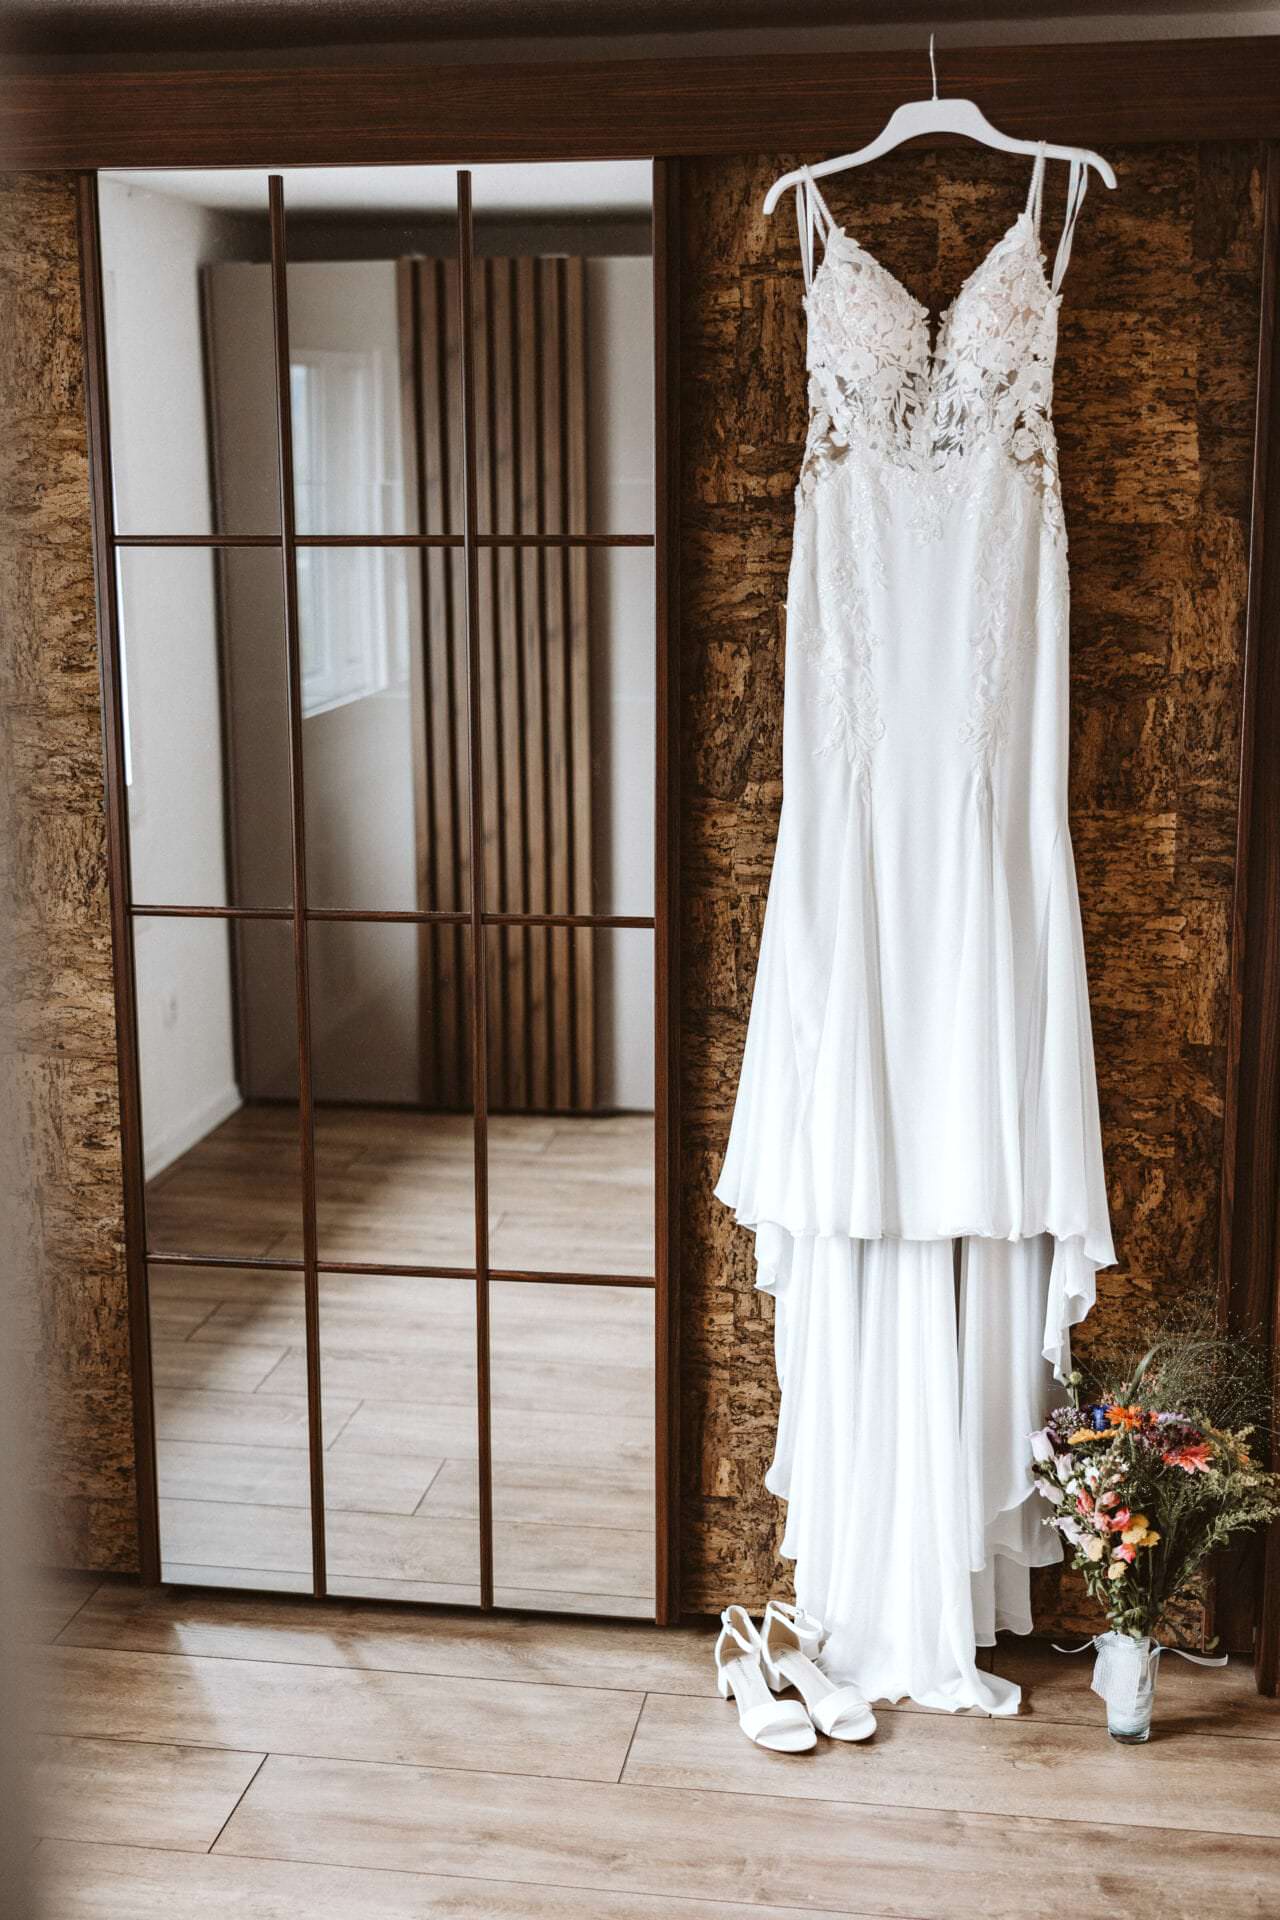 Hochzeitsfotograf Dorsten Hochzeit Heiraten Hochzeitsfotos - Hochzeitskleid hängt auf einem weißen Kleiderbügel neben einem Spiegel. Unter dem Hochzeitskleid ist ein Blumenstrauß und Schuhe zu sehen